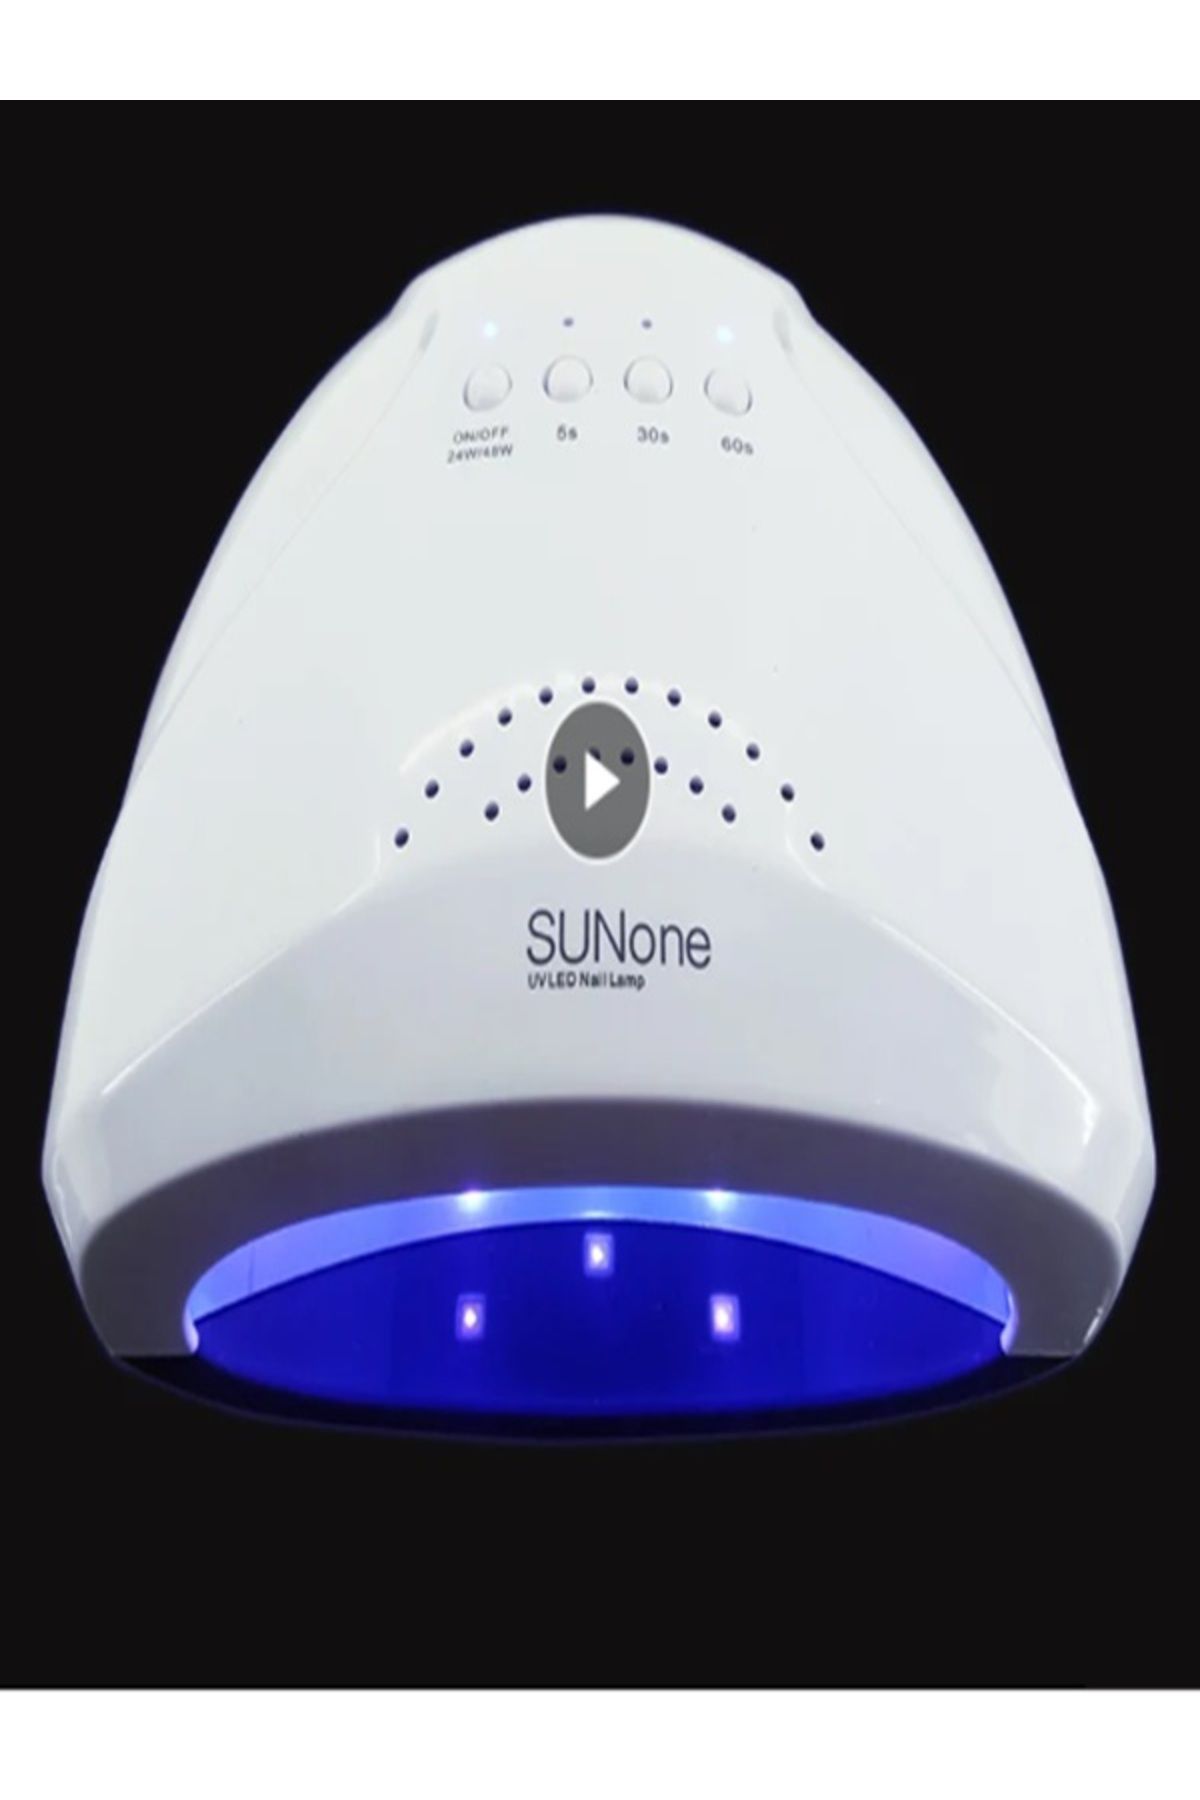 SUNONE Tırnak Lambası UV/LED Nail Lamp 48w Özel Oje Tutkal Hızlı Kuruyan Pişirme Lambası